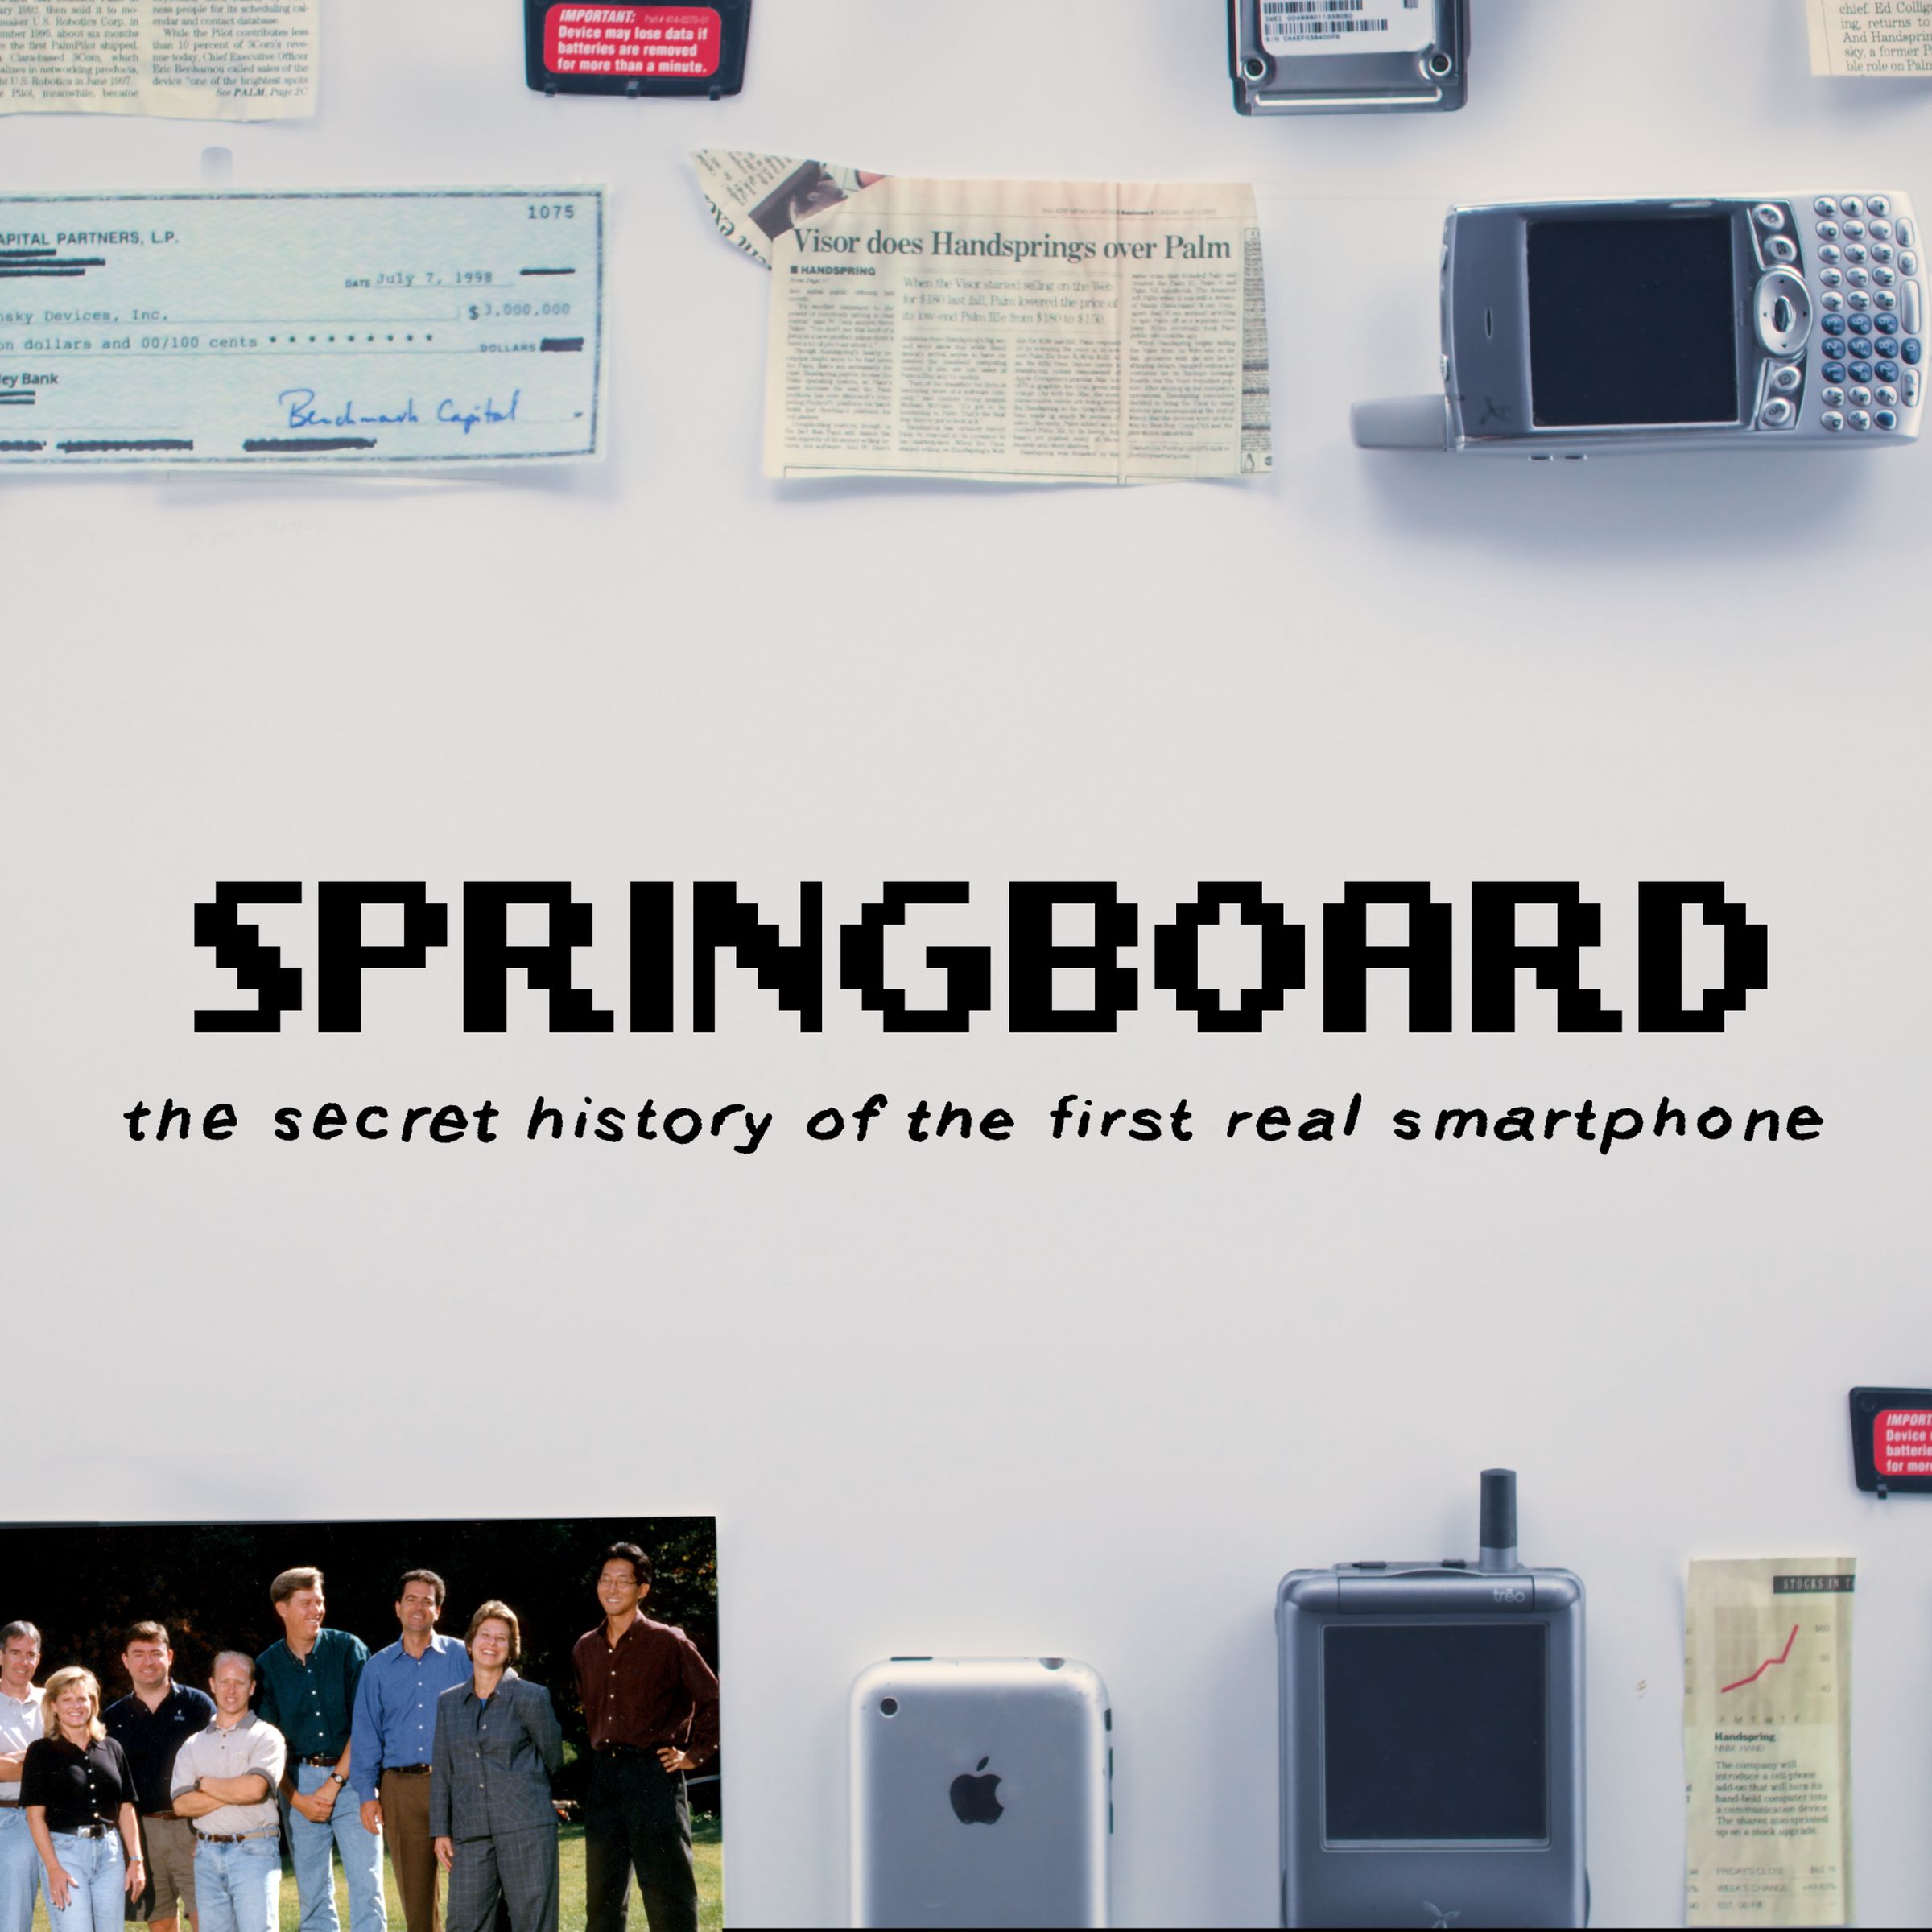 Springboard